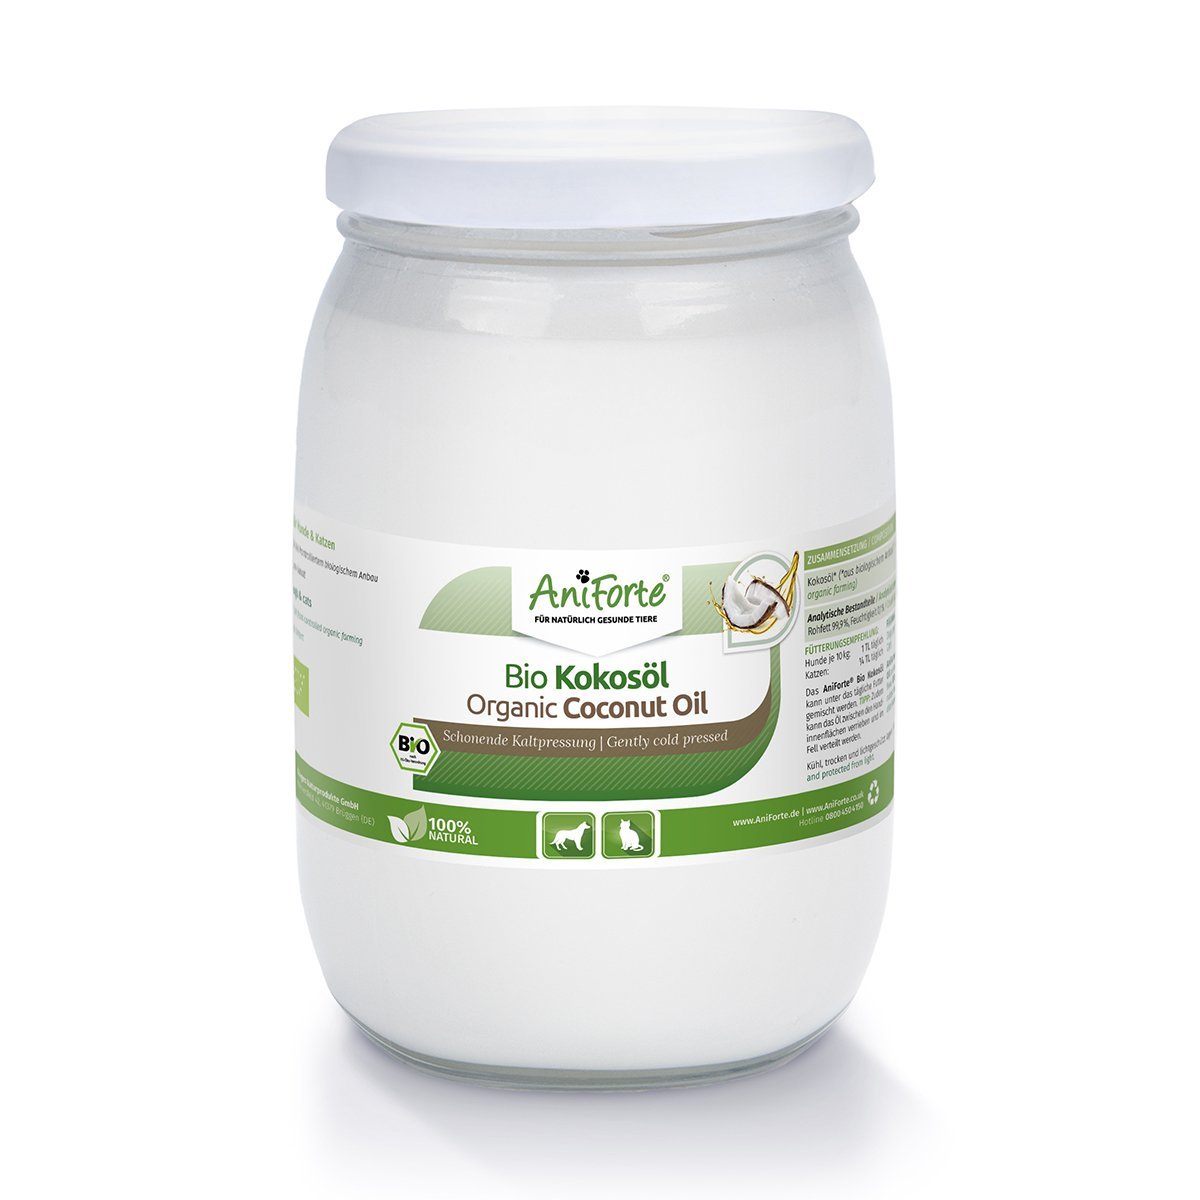 Aniforte - Bio Kokosöl